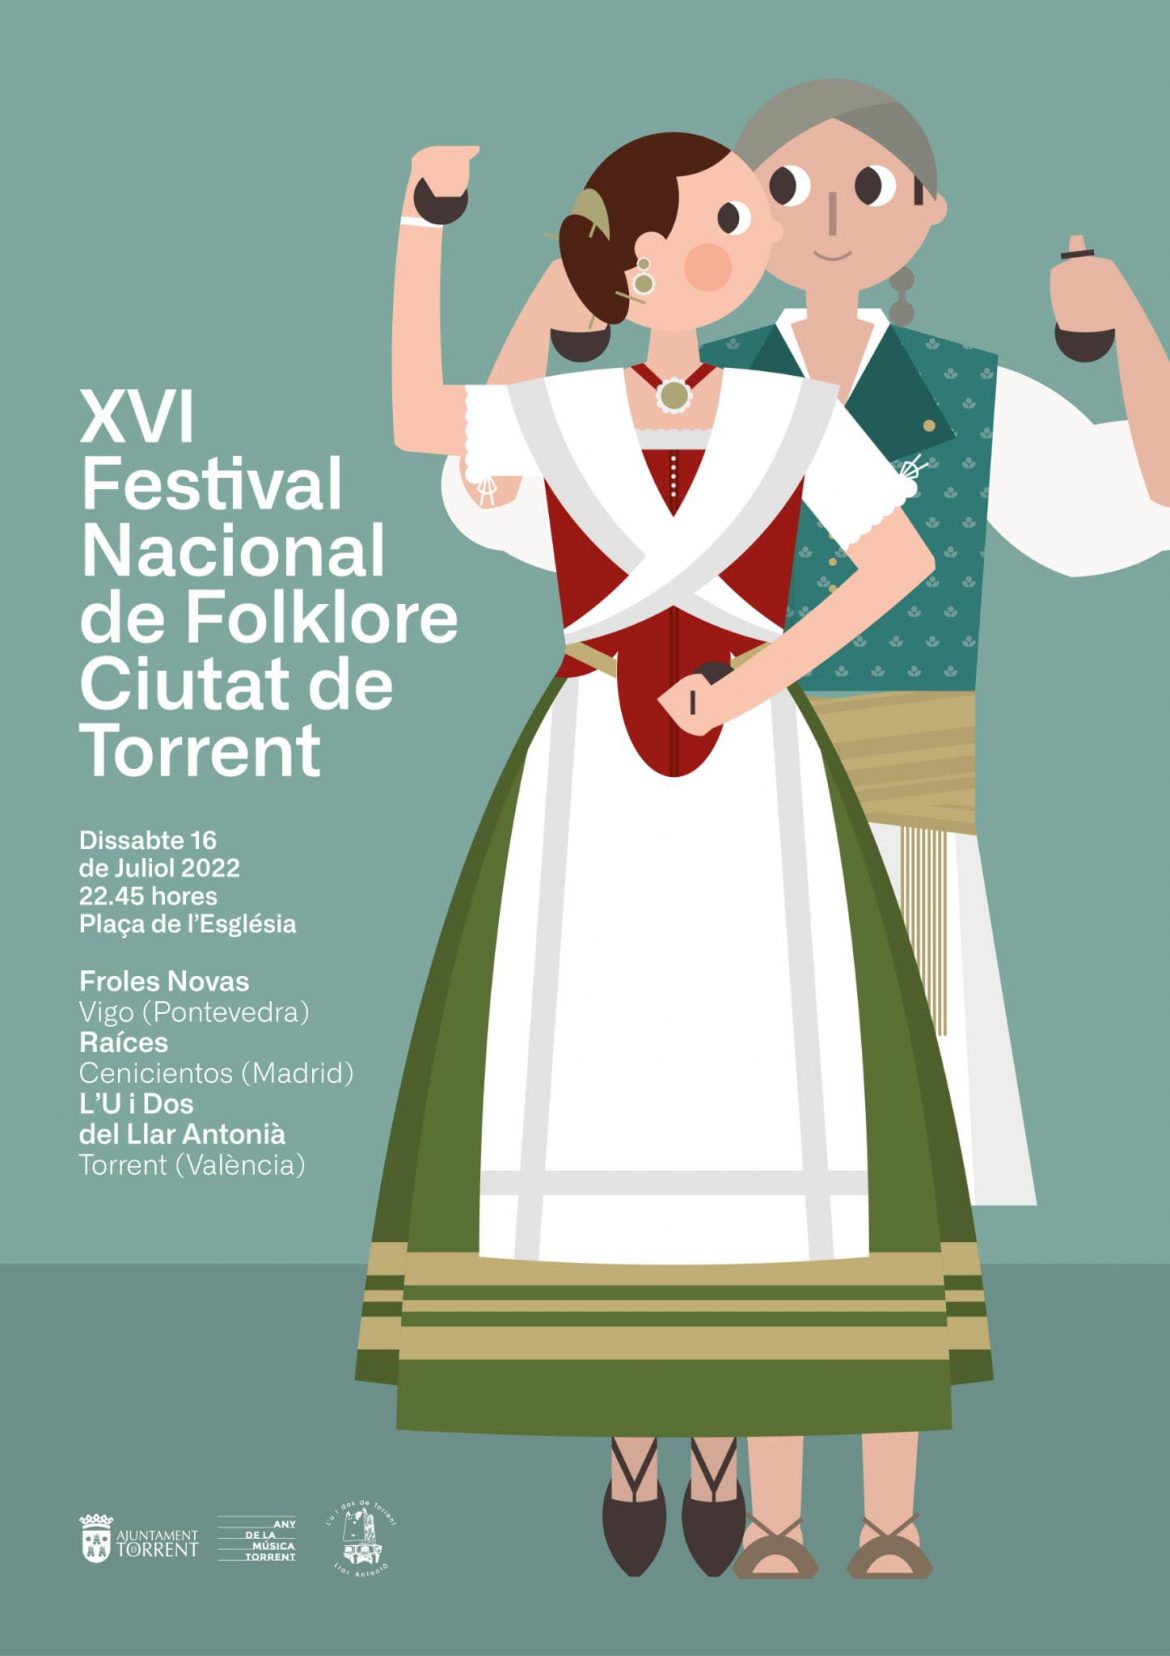 El XVI Festival Nacional de Folklore ‘Ciutat de Torrent’ vuelve a la plaza de la Iglesia